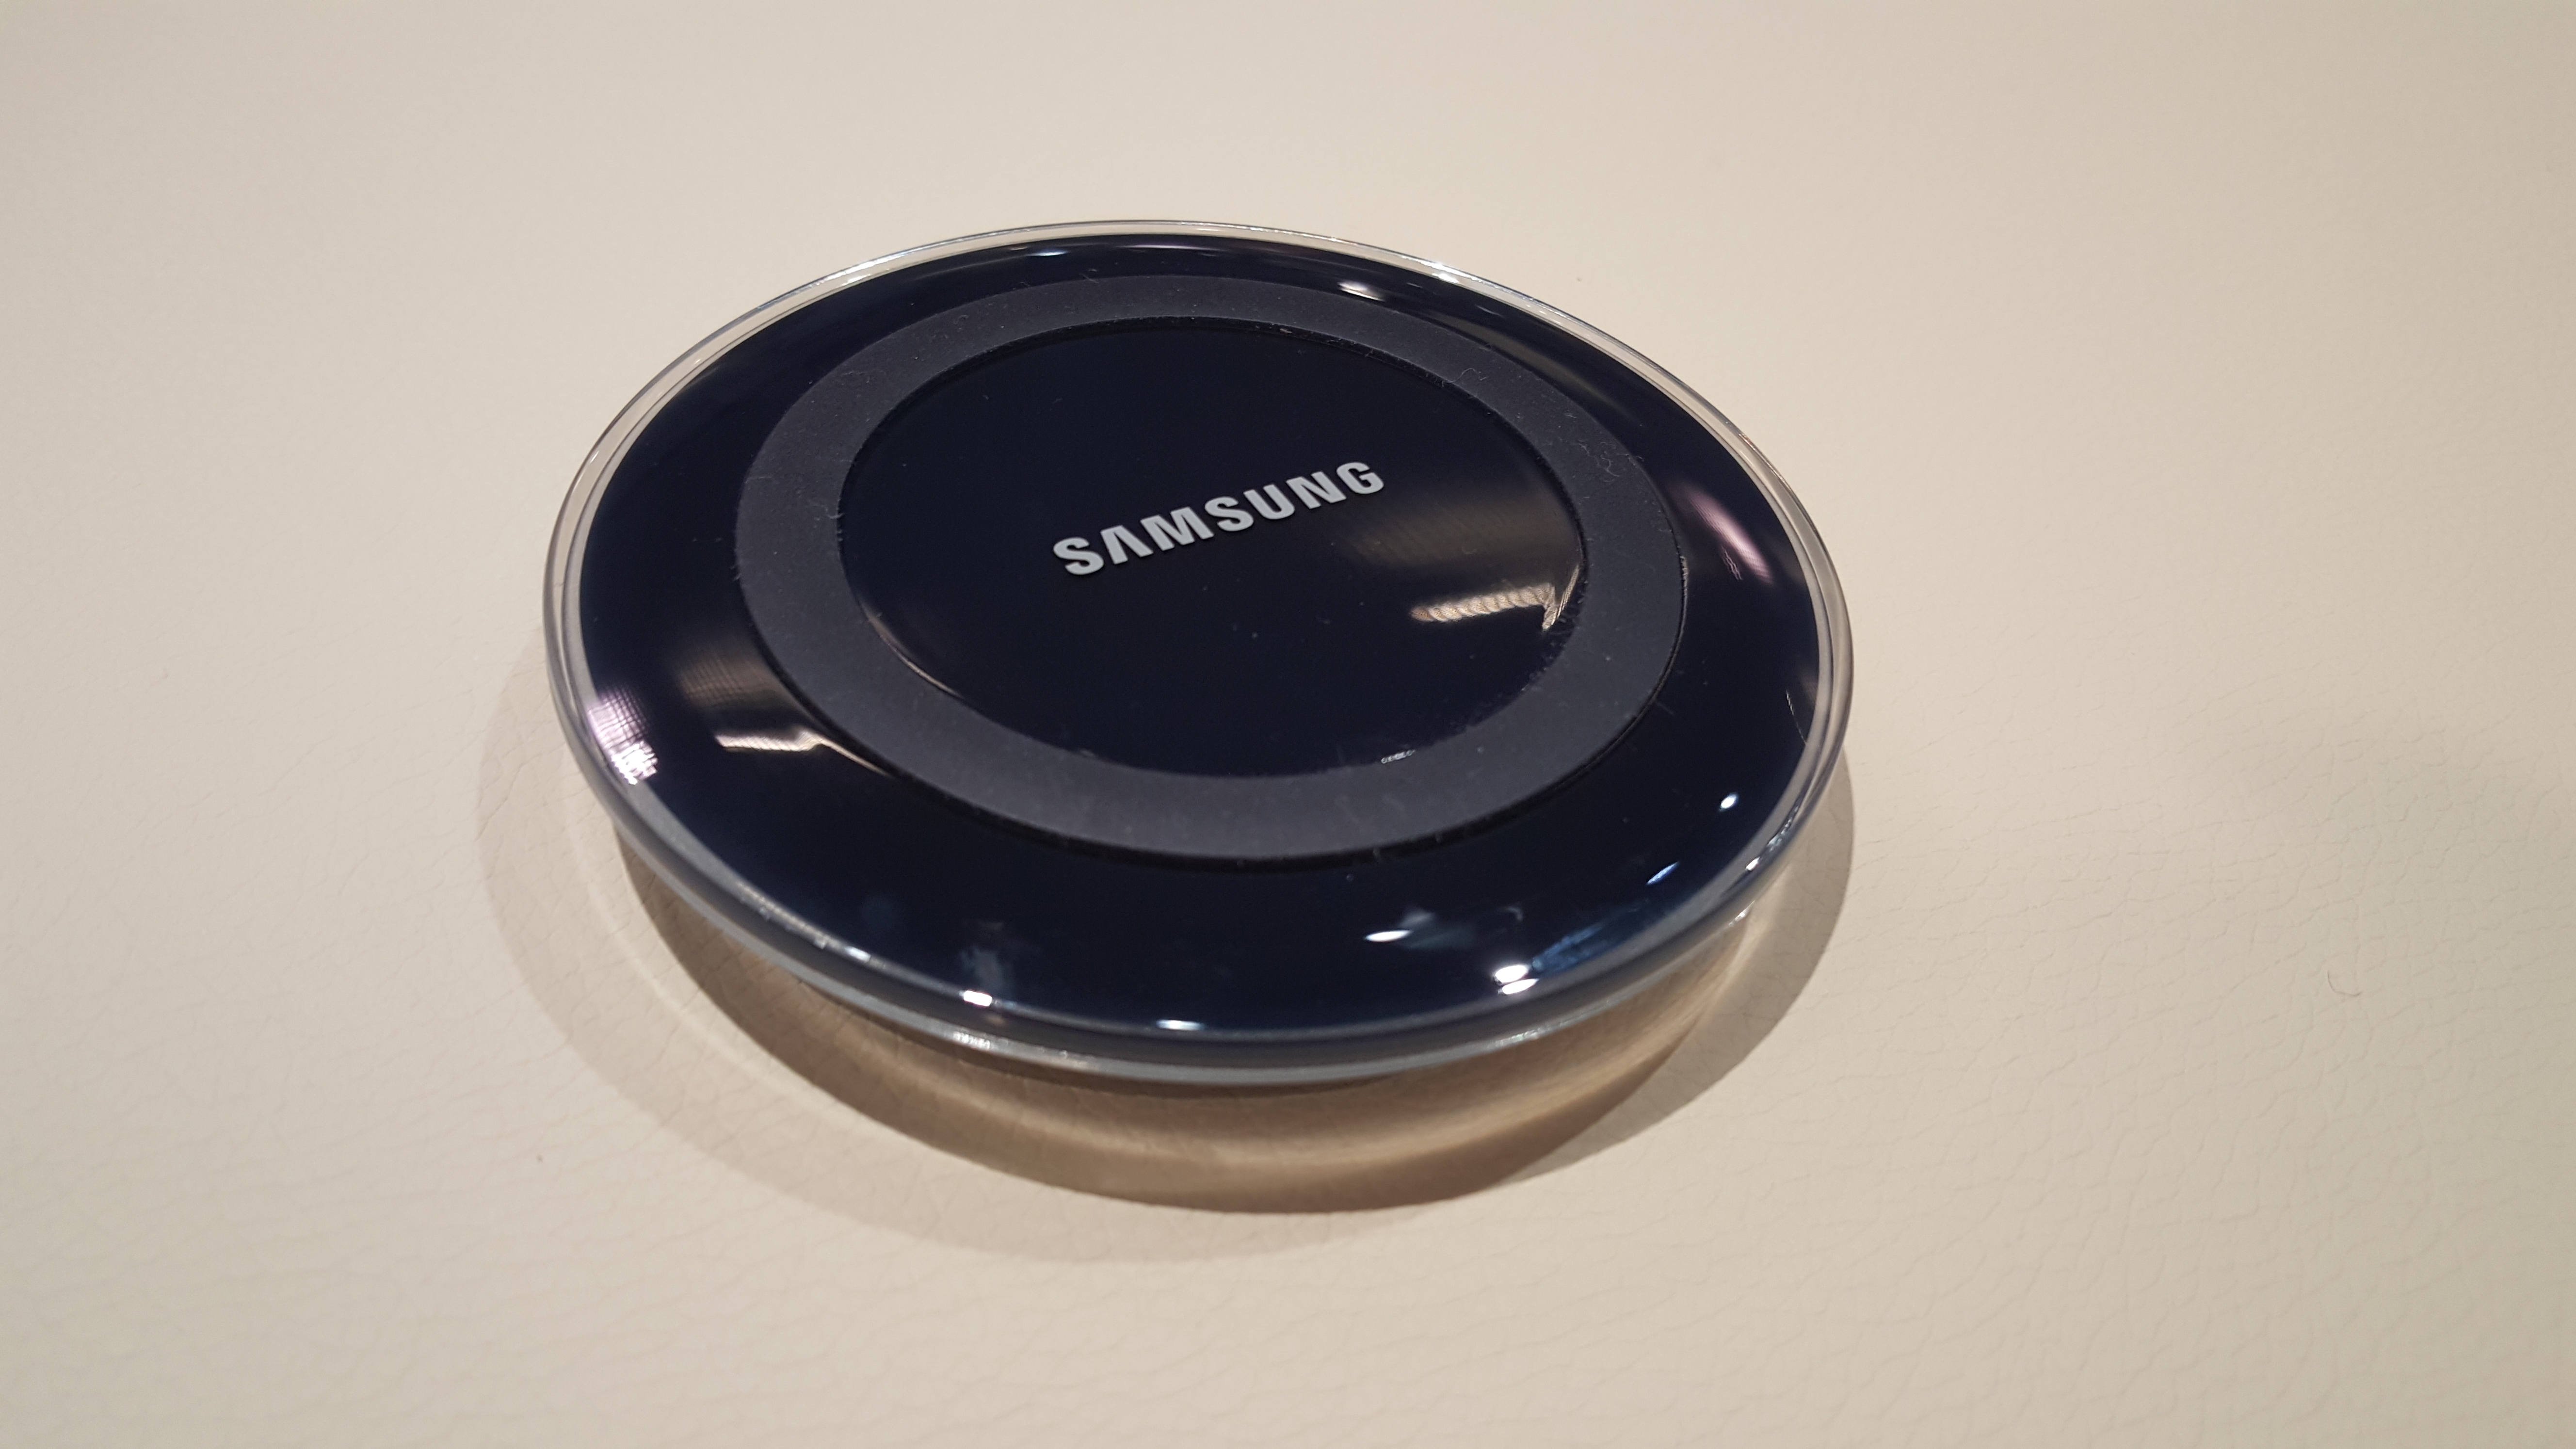 Appareil photo Samsung Galaxy S6 Edge MWC 2015 photo 2